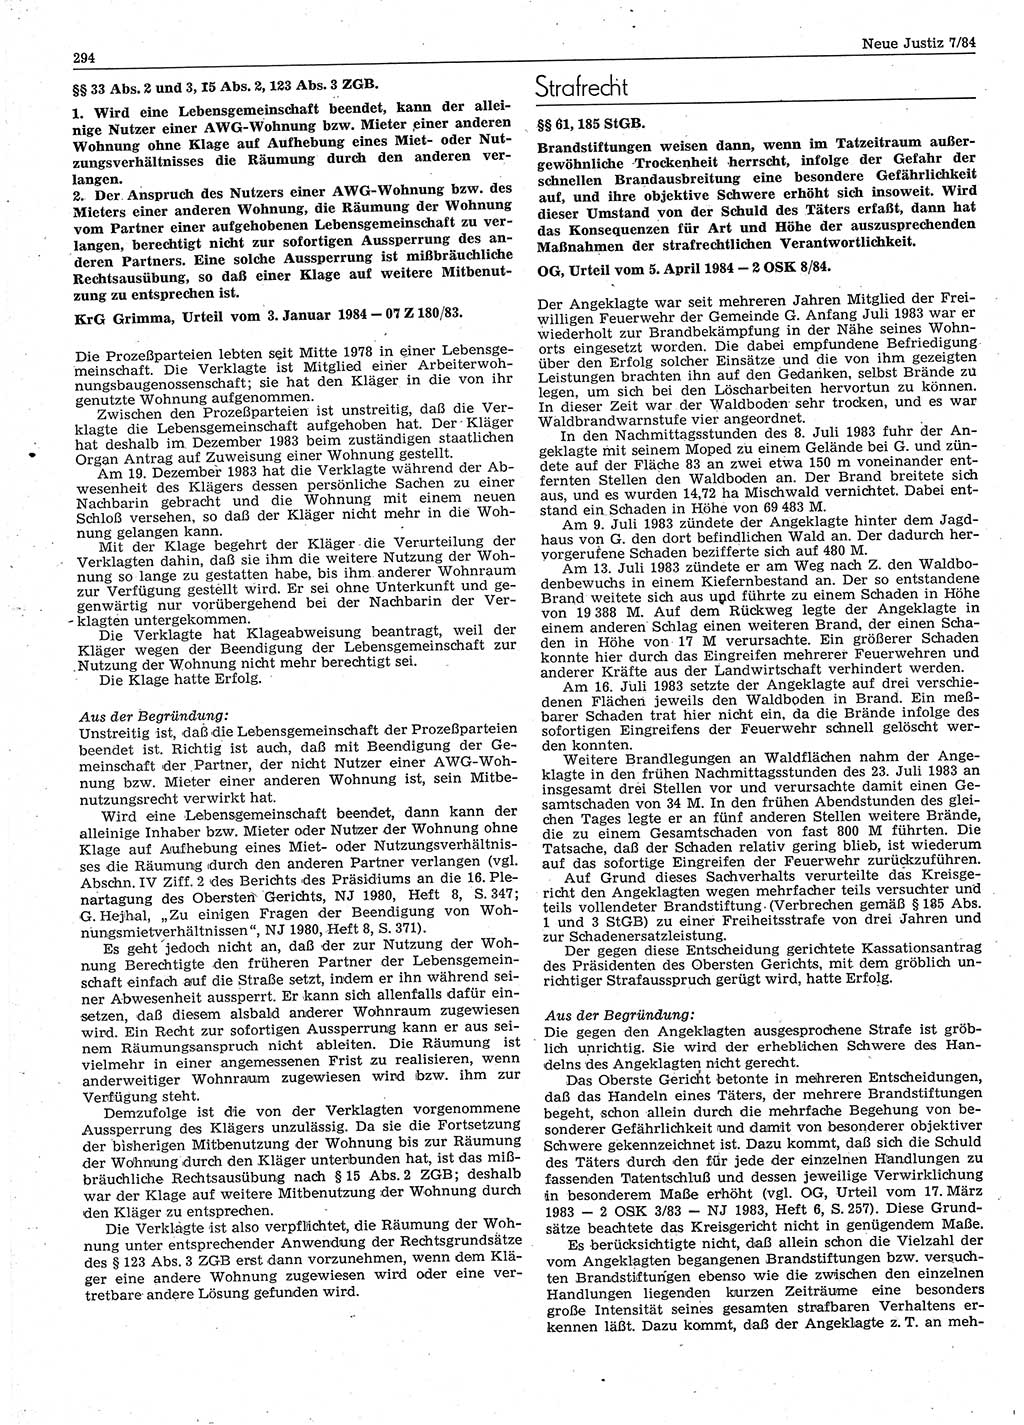 Neue Justiz (NJ), Zeitschrift für sozialistisches Recht und Gesetzlichkeit [Deutsche Demokratische Republik (DDR)], 38. Jahrgang 1984, Seite 294 (NJ DDR 1984, S. 294)